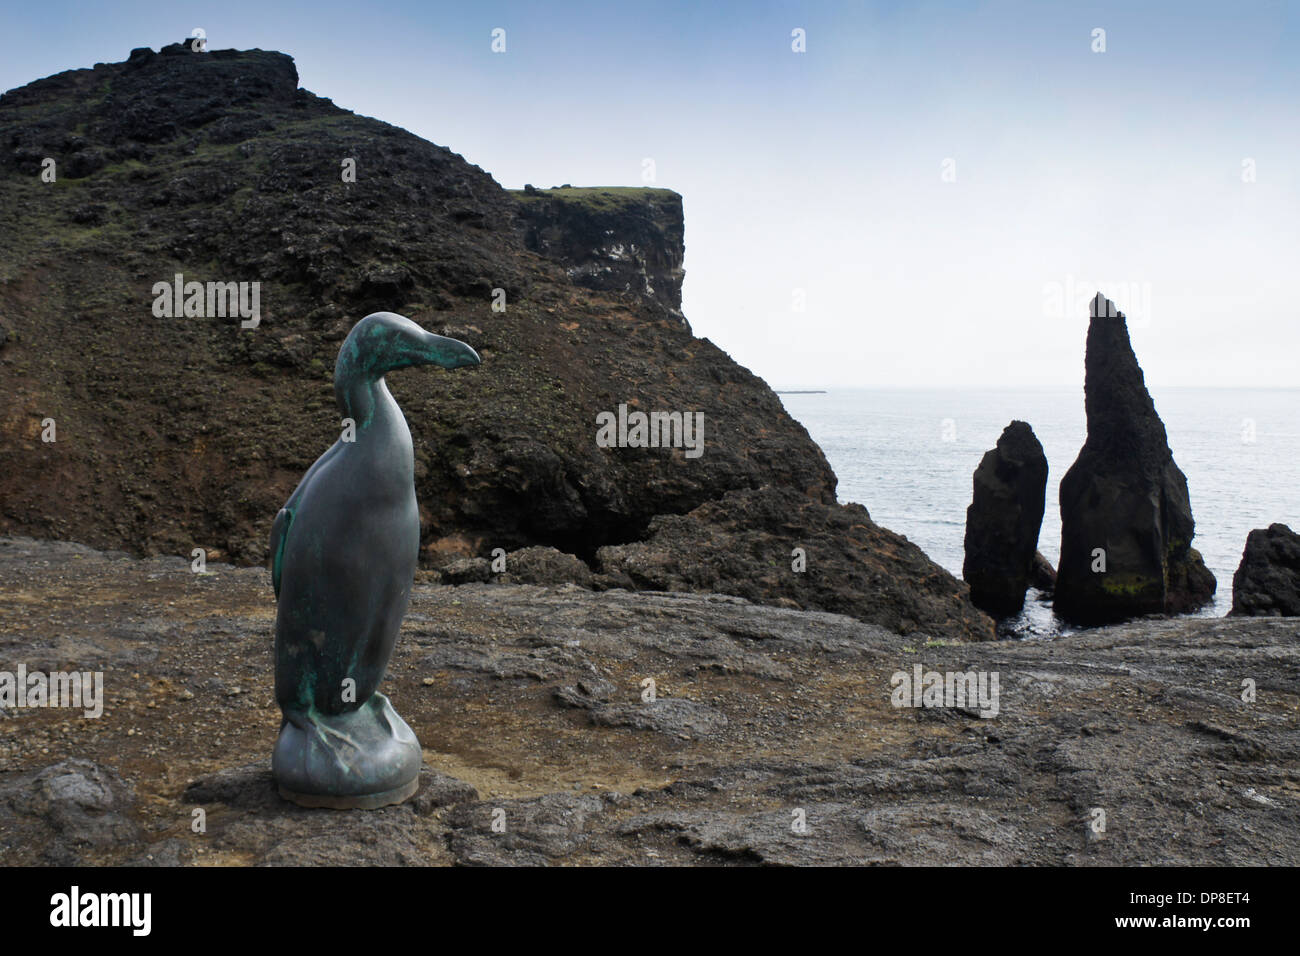 Great Auk sculpture at Valahnukur cliffs, Reykjanesviti, Reykjanes Peninsula, Iceland Stock Photo